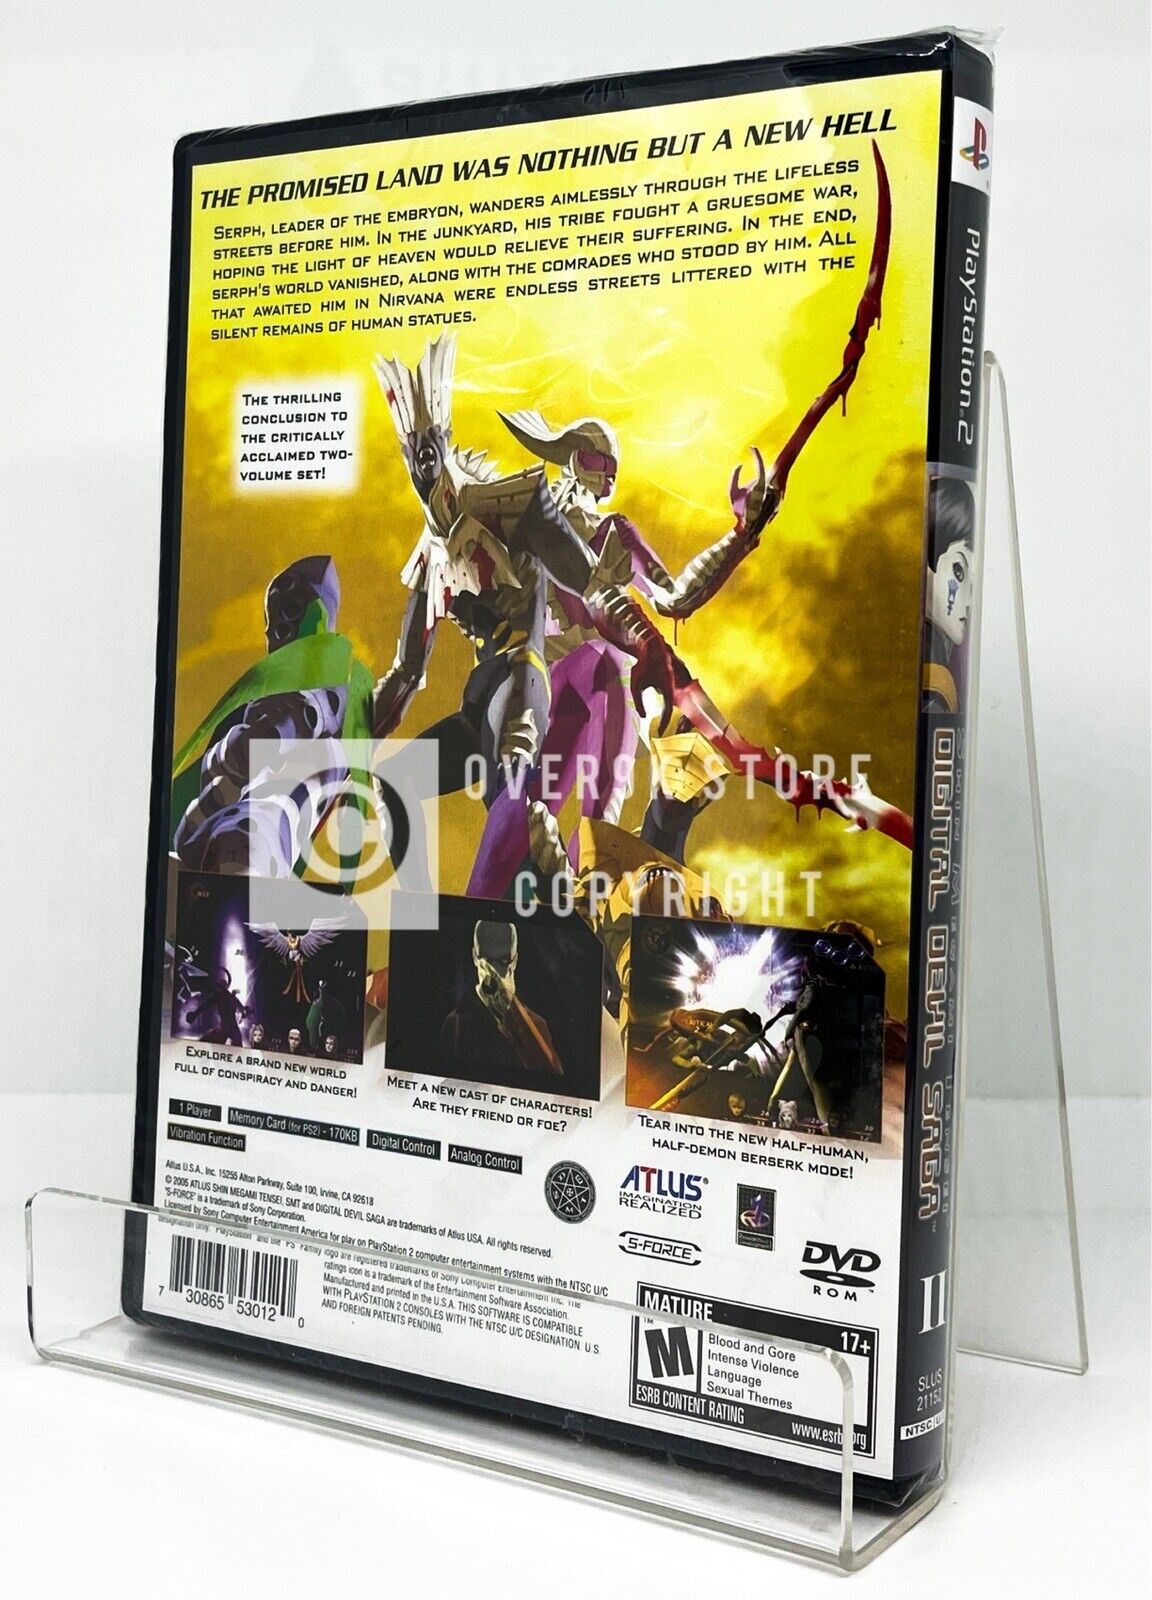 Shin Megami Tensei Digital Devil Saga 2 - PS2 - Brand New 